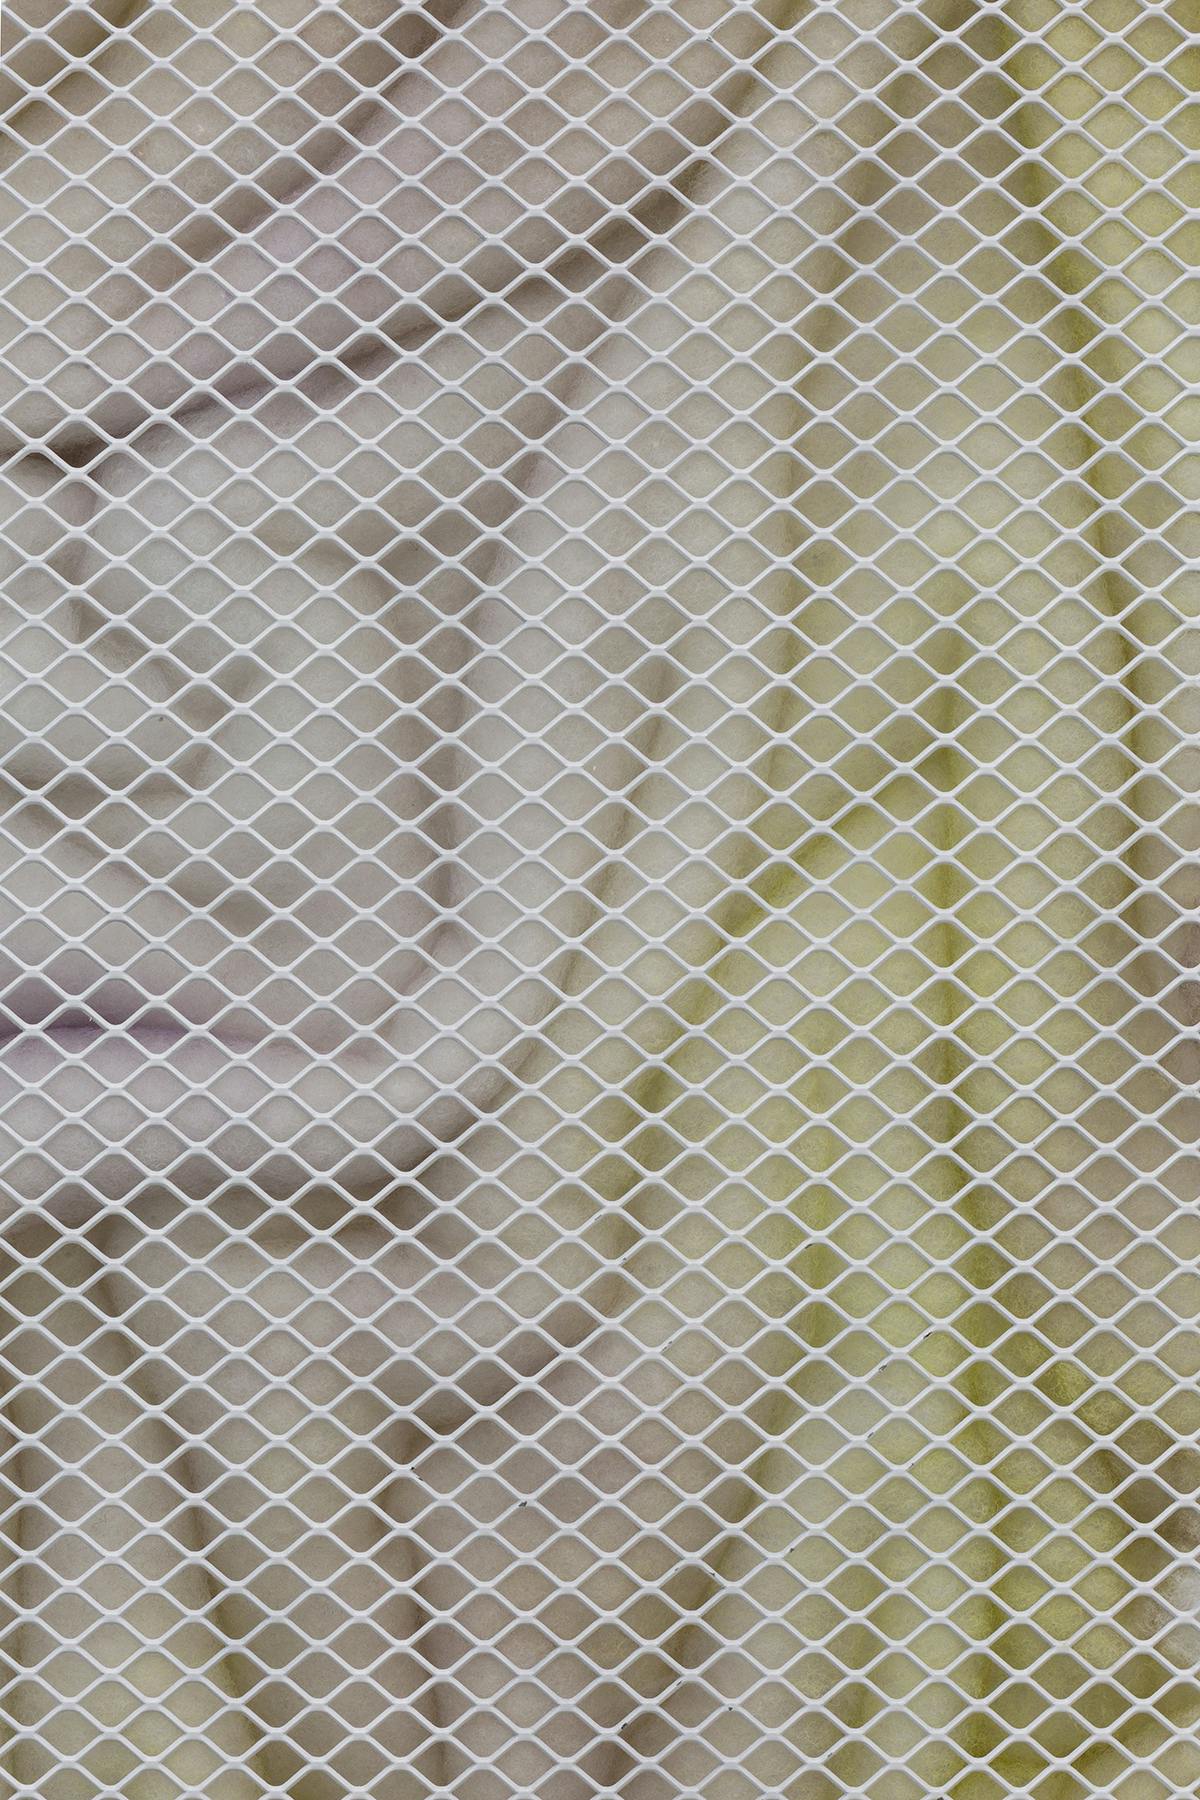 Deserto #826, Alessandro Costanzo, 2022, acrilico su ovatta sintetica e rete metallica, 180 x 90 x 5 cm - (dettaglio)